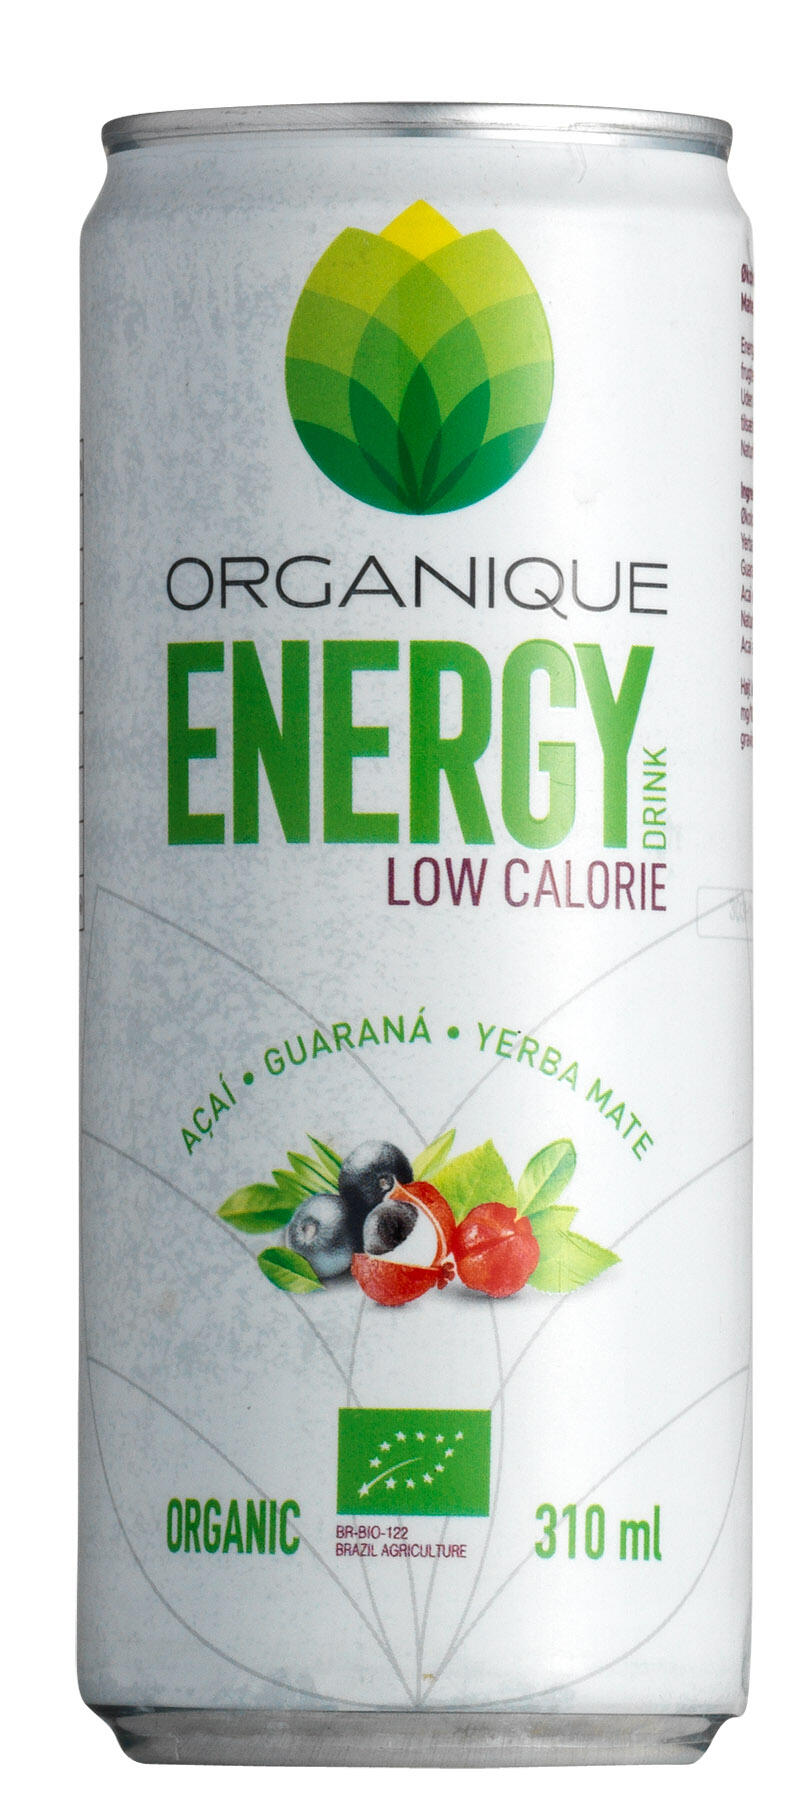 energy low calorie Organique